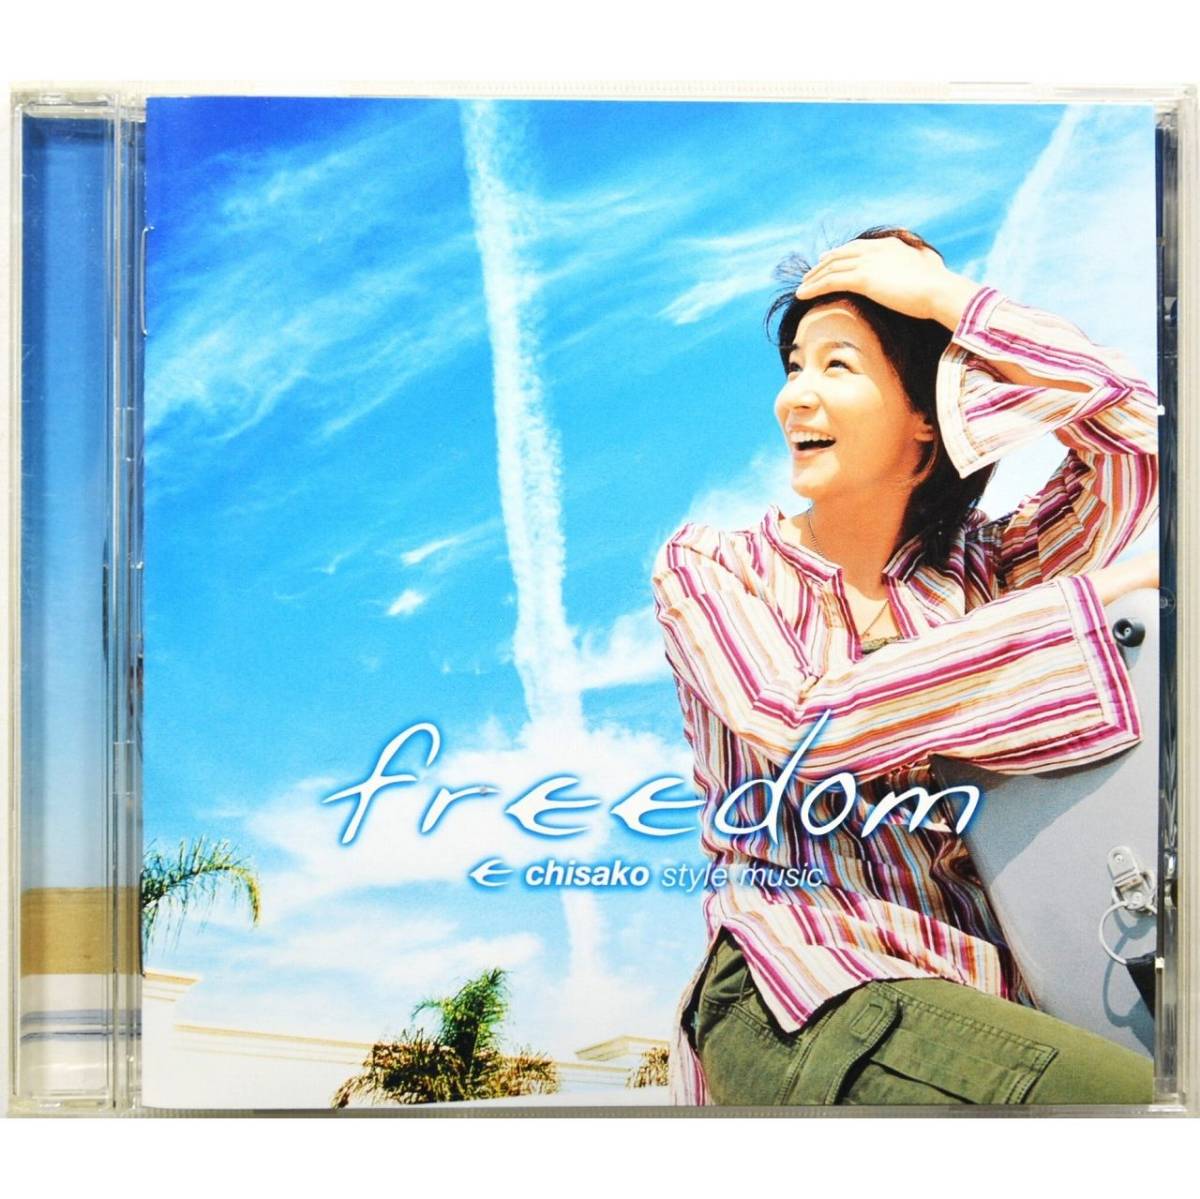 高嶋ちさ子 / フリーダム ◇ Chisako Takashima / freedom～chisako style music ◇ 国内盤 ◇_画像1